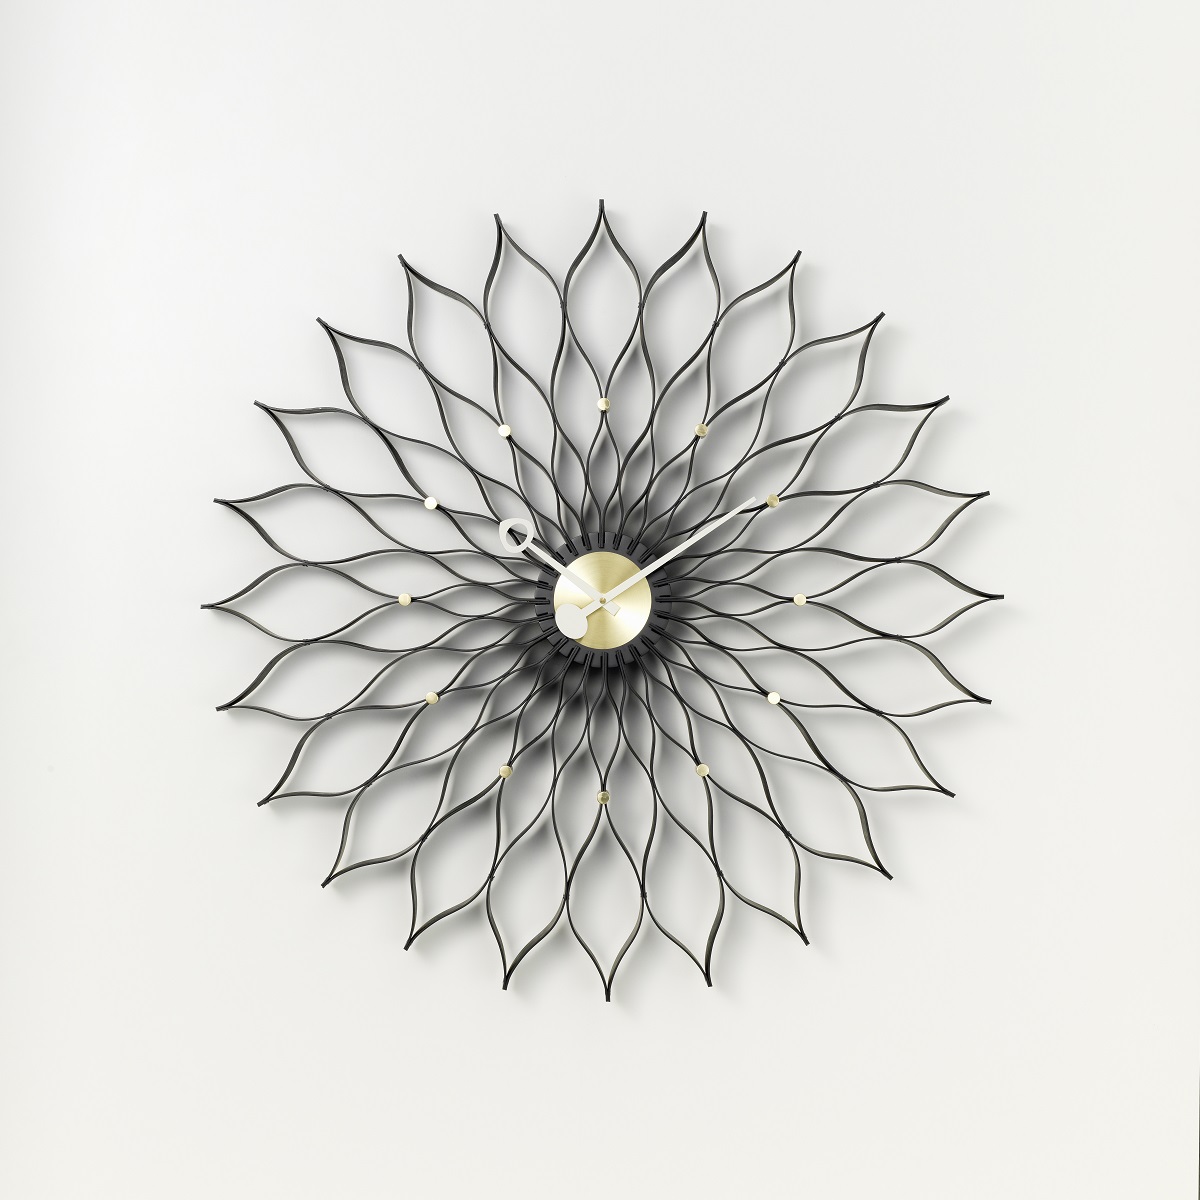 Designobjekt Wanduhr Sunflower clock in schwarz von vitra im LHL Onlineshop kaufen. Vorderansicht